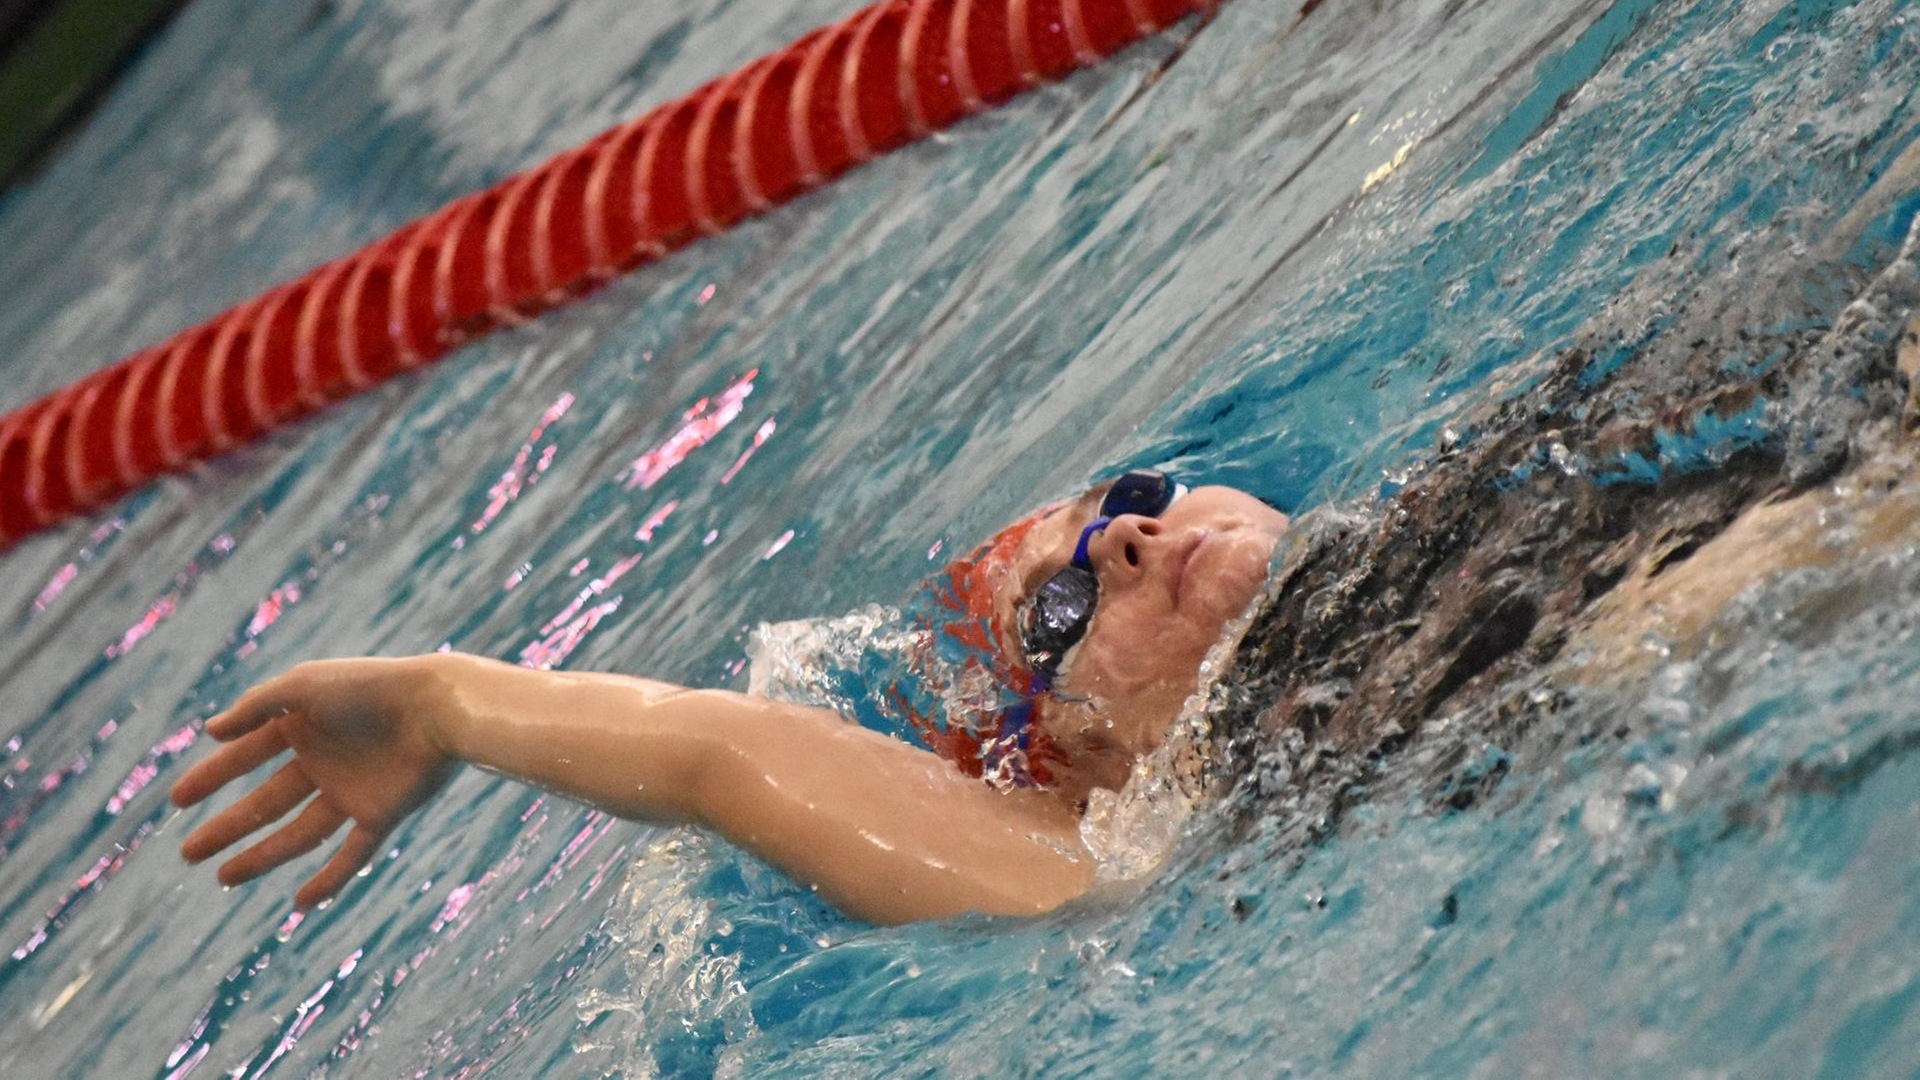 women's swimmer in backstroke motion